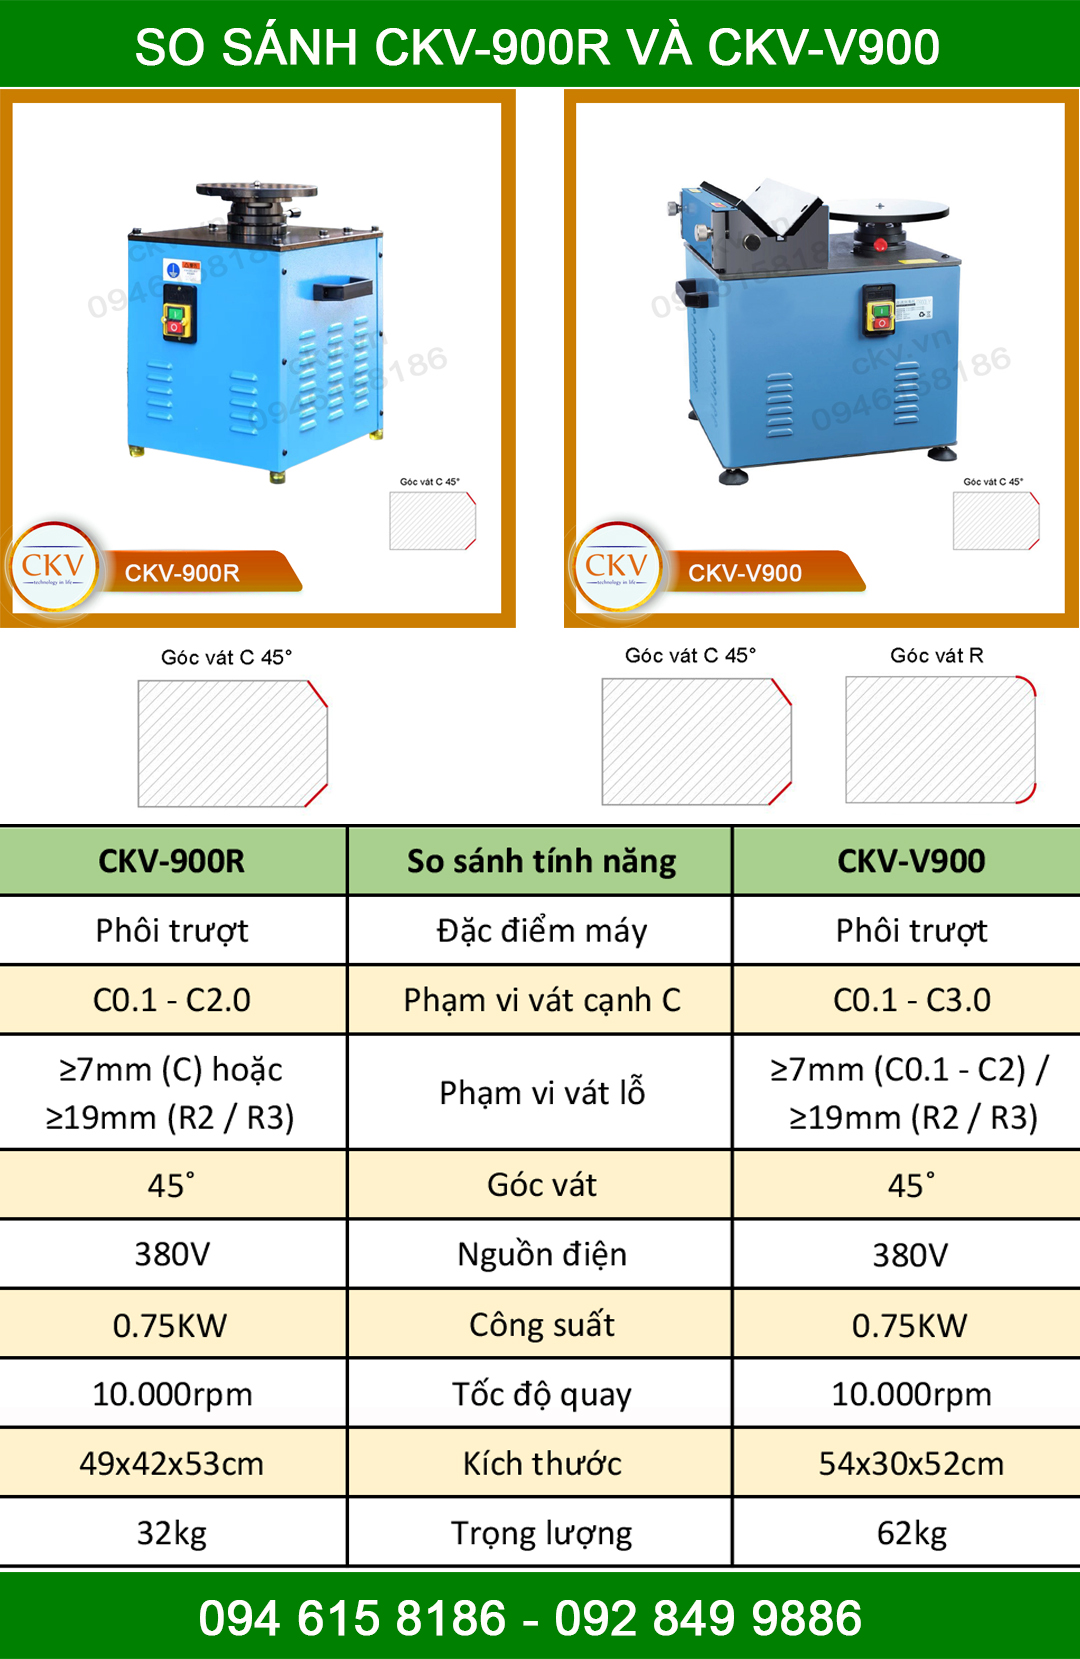 So sánh CKV-900R với CKV-V900